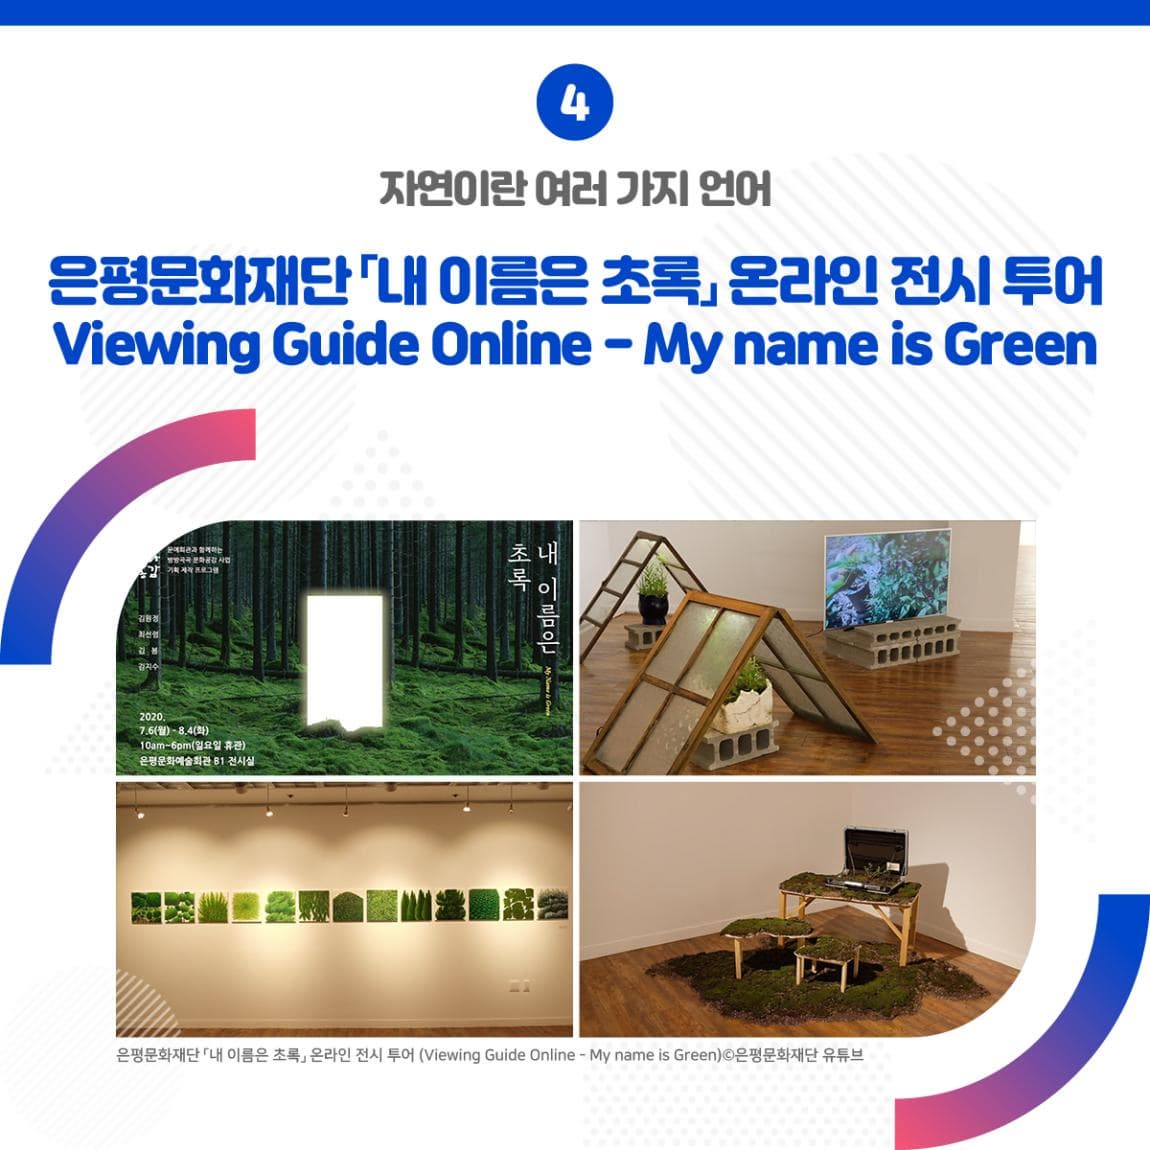 자연이란 여러 가지 언어 은평문화재단 「내 이름은 초록」 온라인 전시 투어 (Viewing Guide Online - My name is Green) ㅣ 은평문화재단 「내 이름은 초록」 온라인 전시 투어 (Viewing Guide Online - My name is Green) 은평문화재단 유튜브